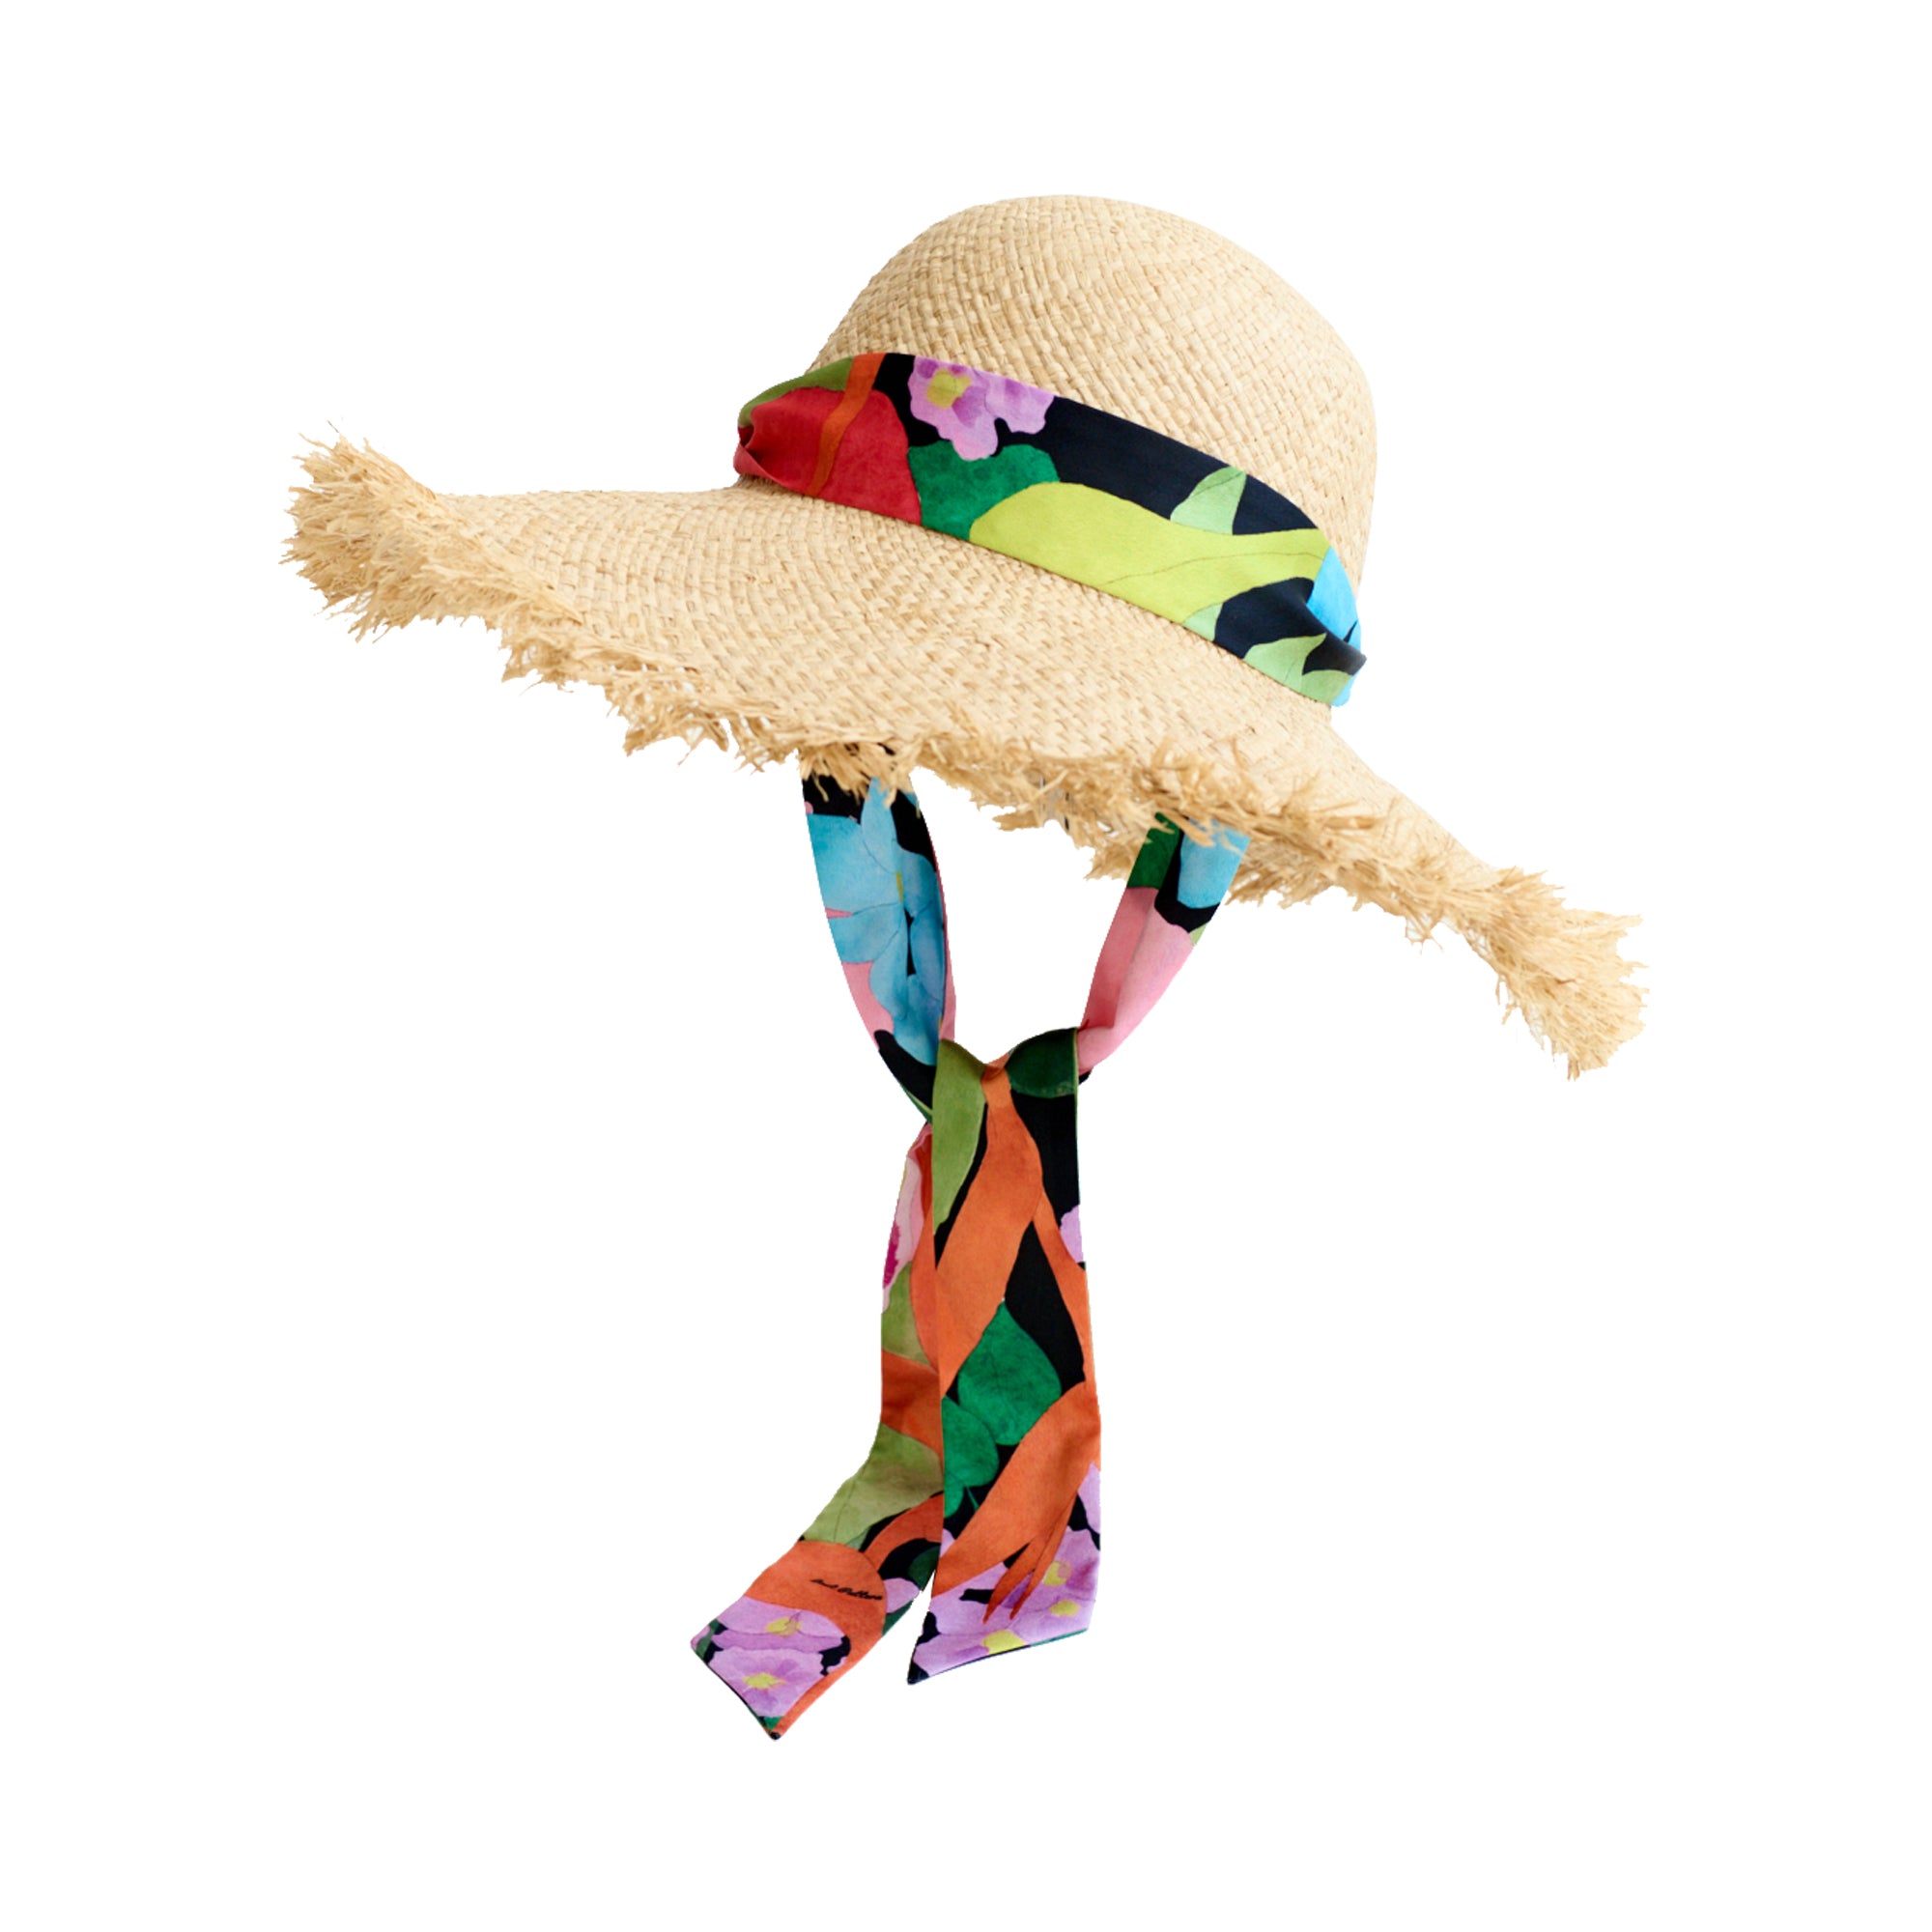 "Cartagena" Straw Hat with Ribbon Tie - Black & Orange - Black & Orange - LOST PATTERN Hats